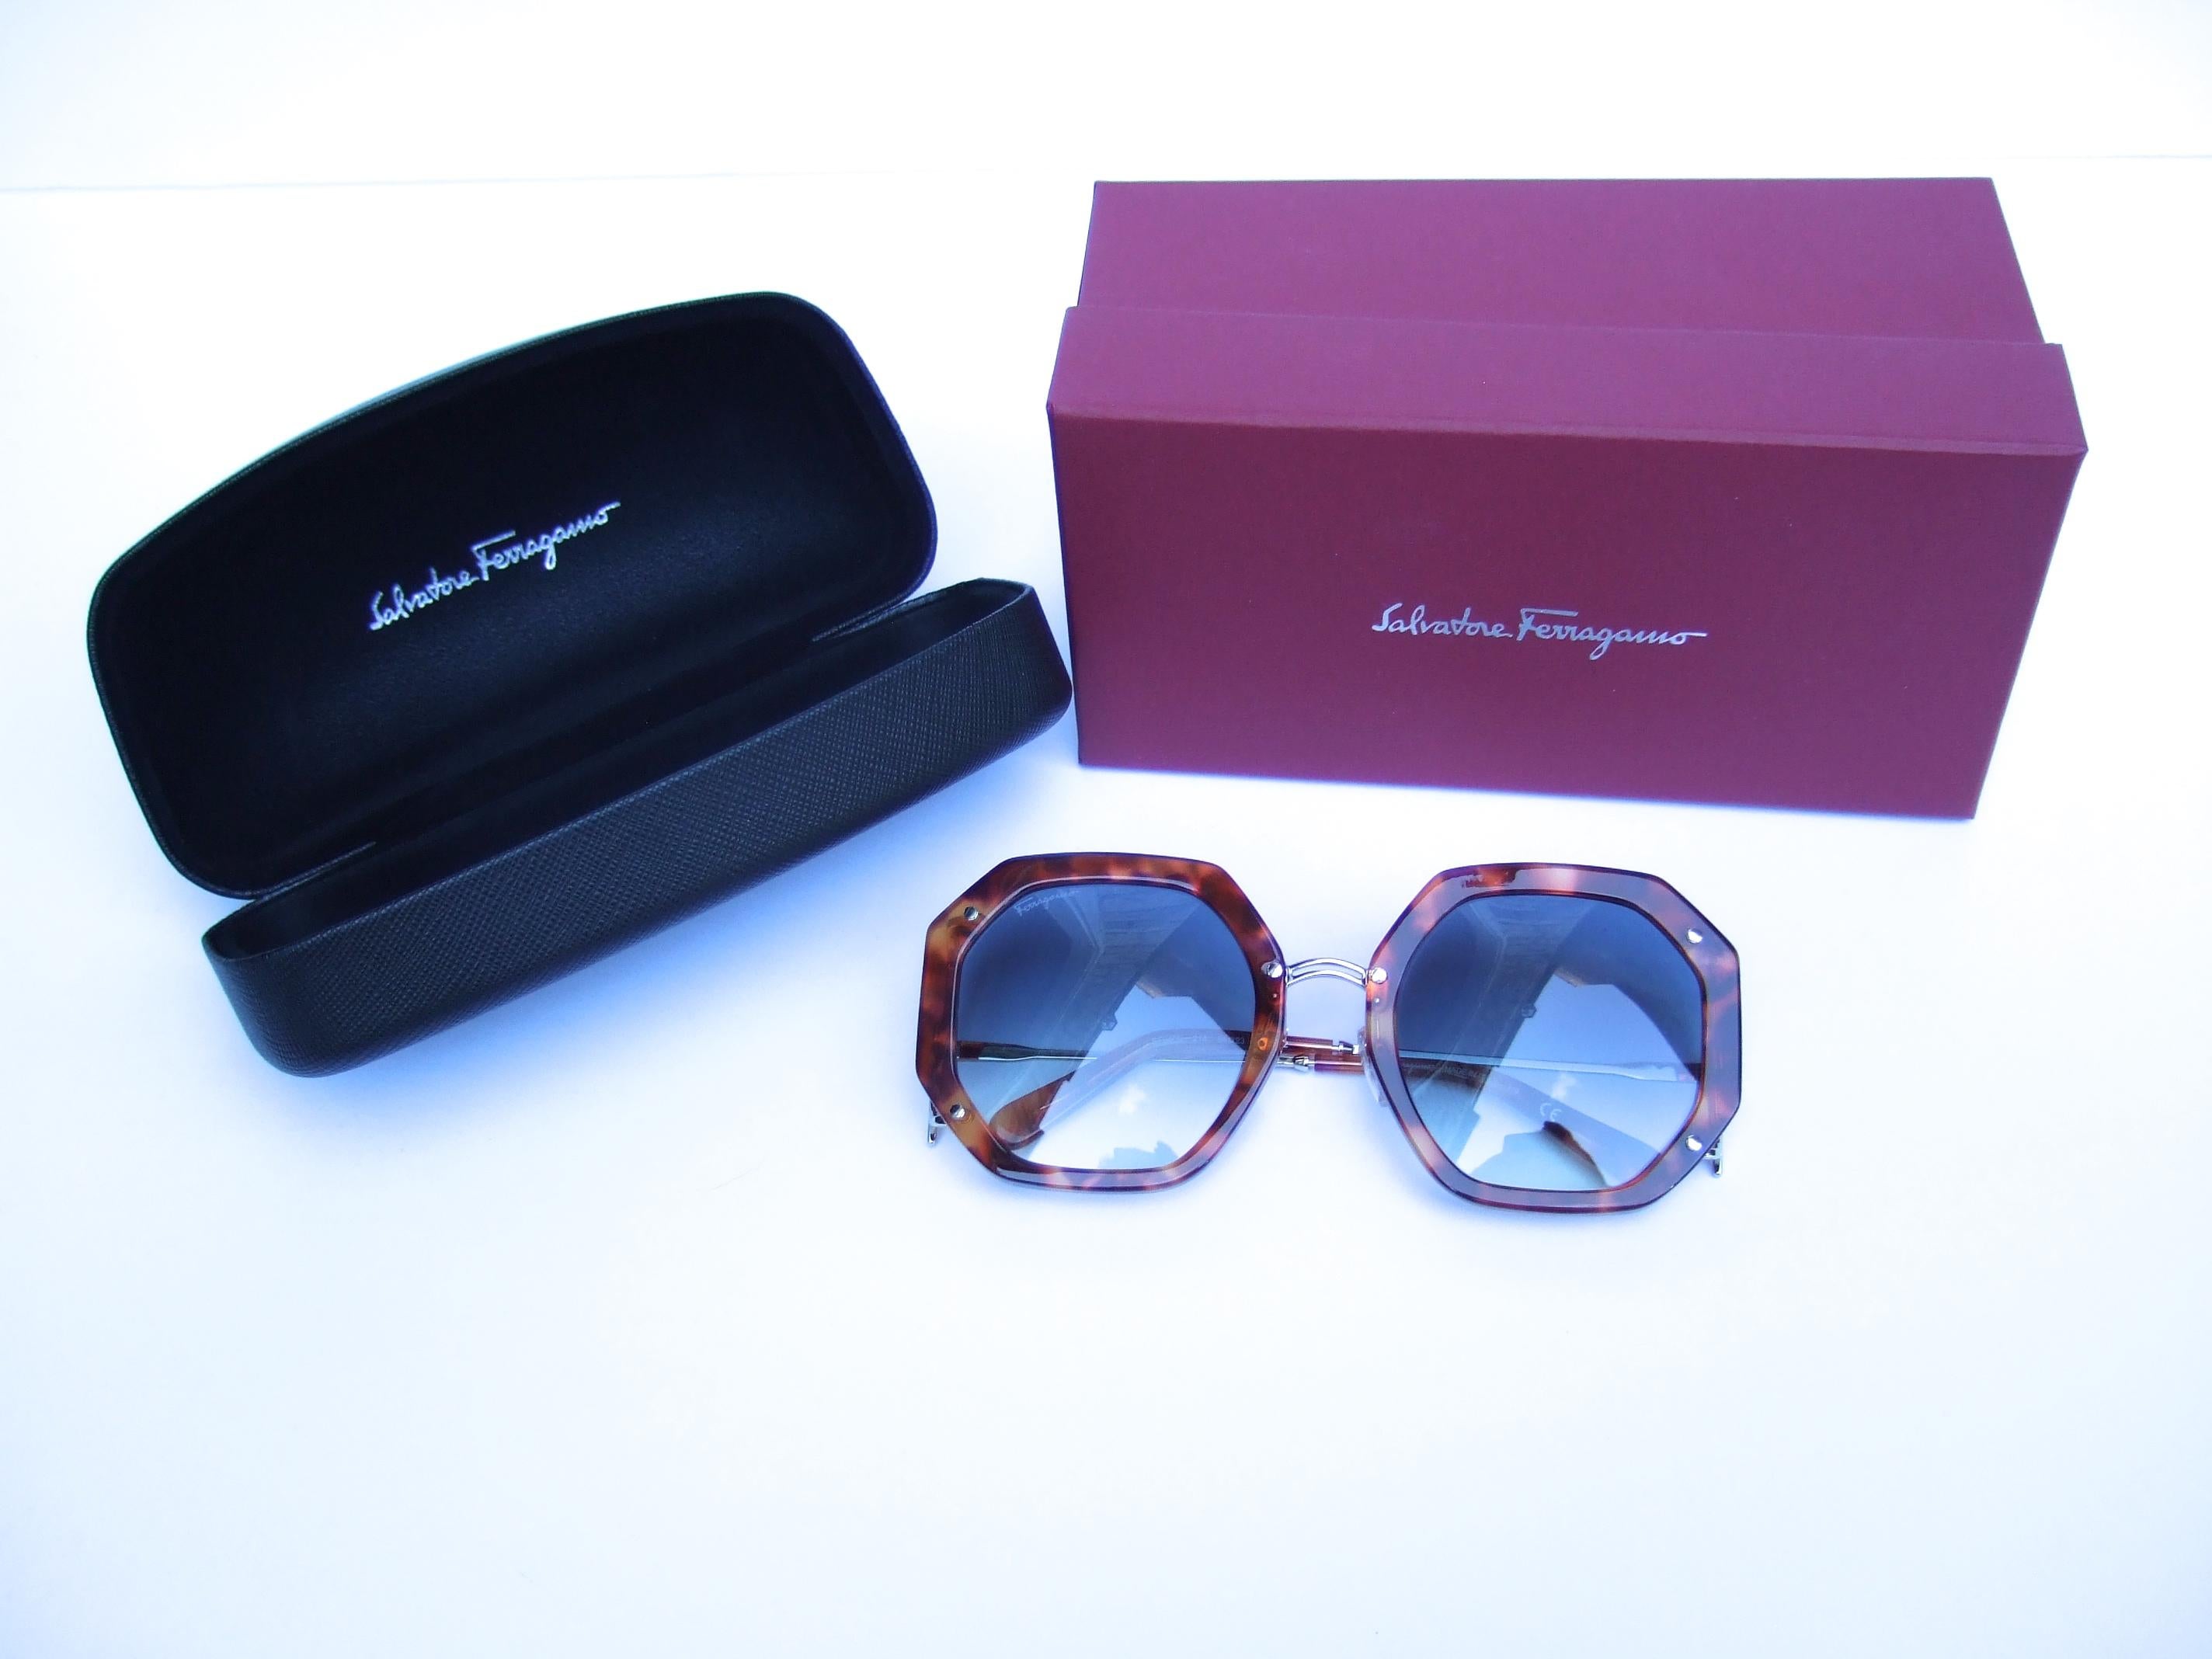 Salvatore Ferragamo Italian Women's Tortoise Shell Sunglasses in Box c 21st c  For Sale 3